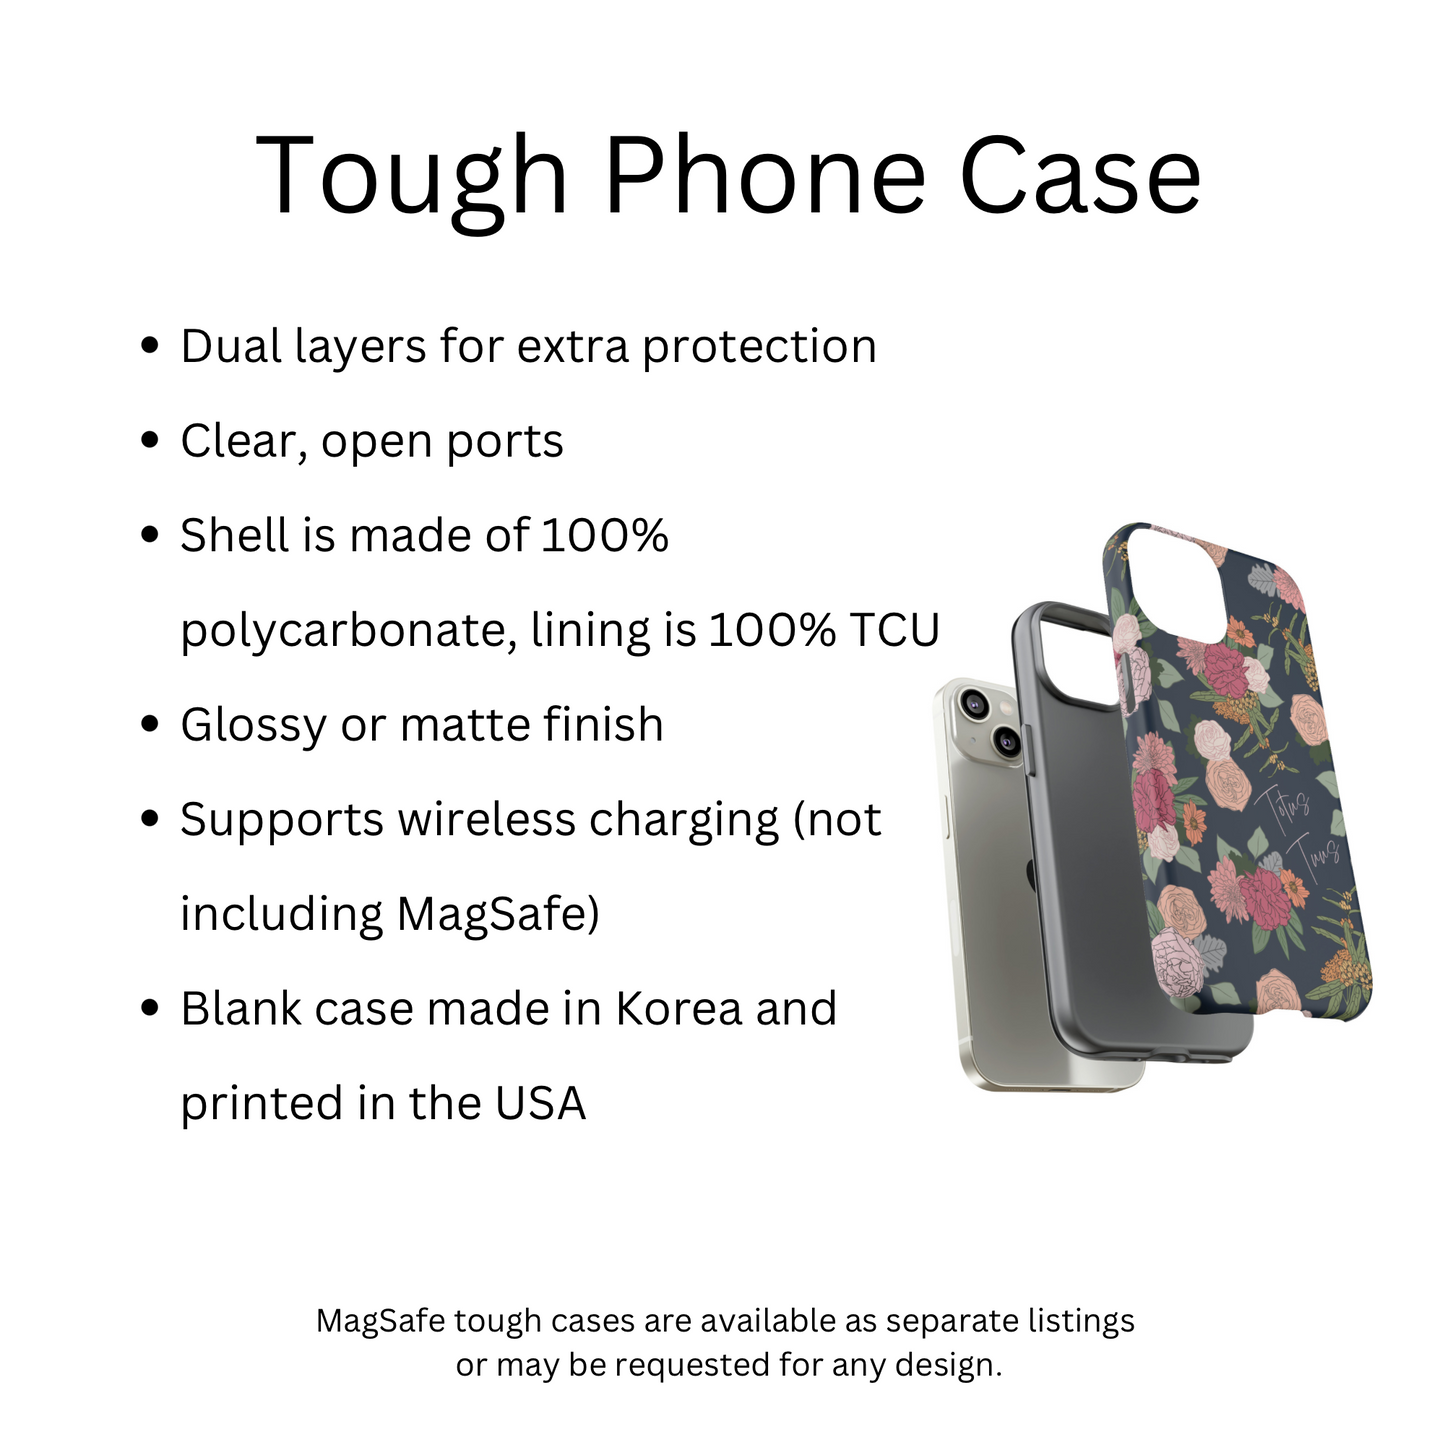 Totus Tuus “Tough” Phone Case